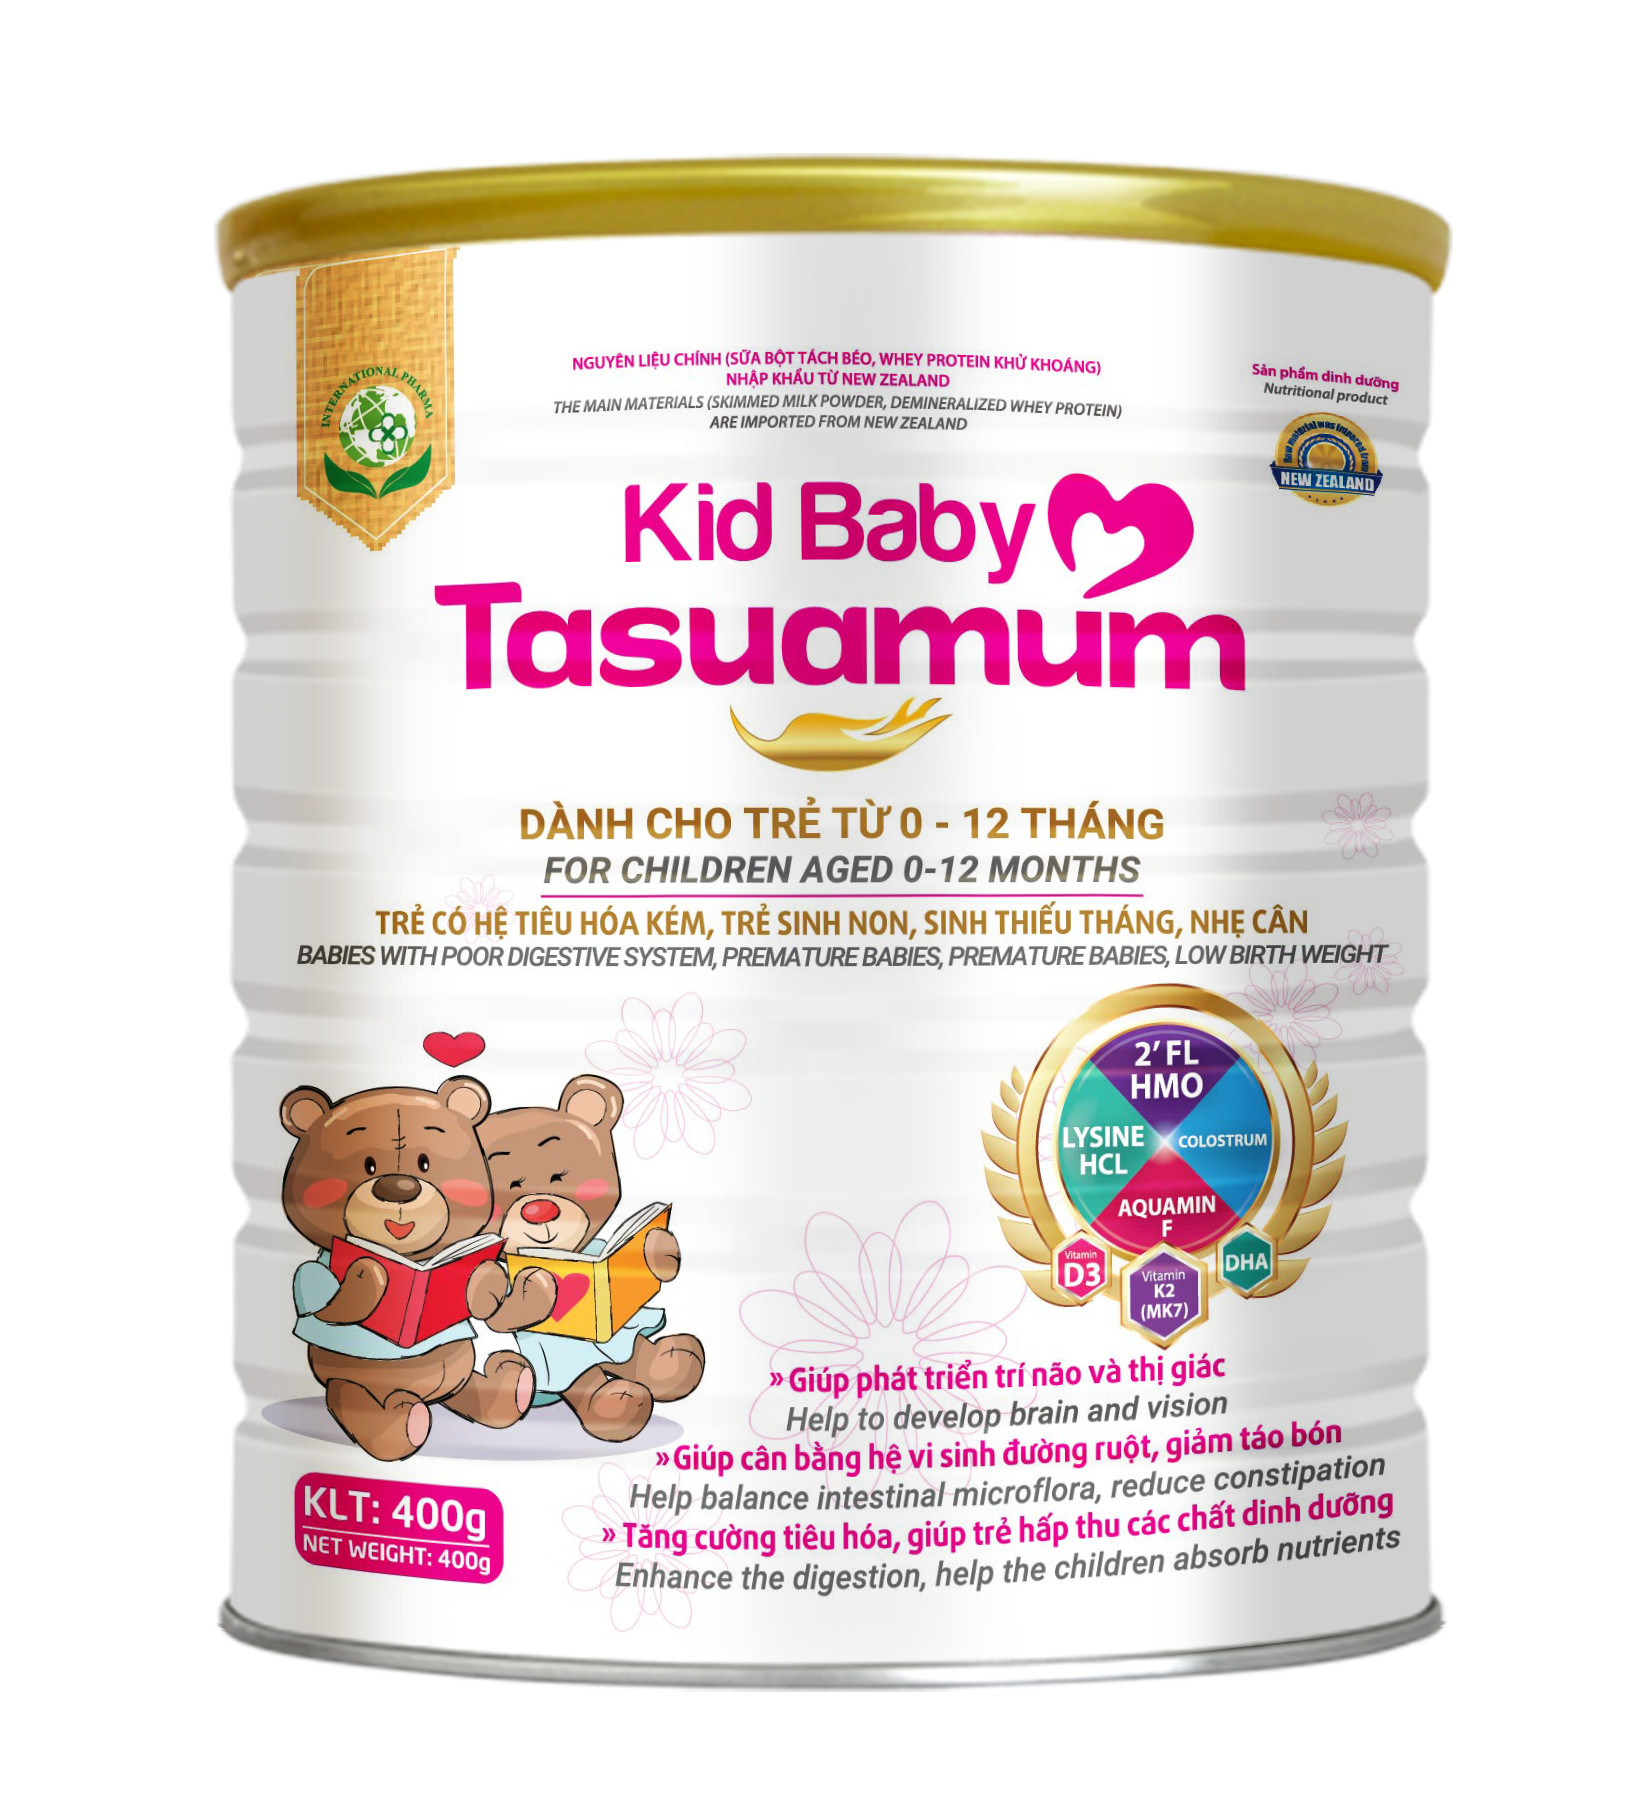 sữa tasuamum kid baby 400g (dành cho trẻ từ 0-12 tháng, trẻ sinh non thiếu tháng, nhẹ cân, tiêu hóa kém) 1